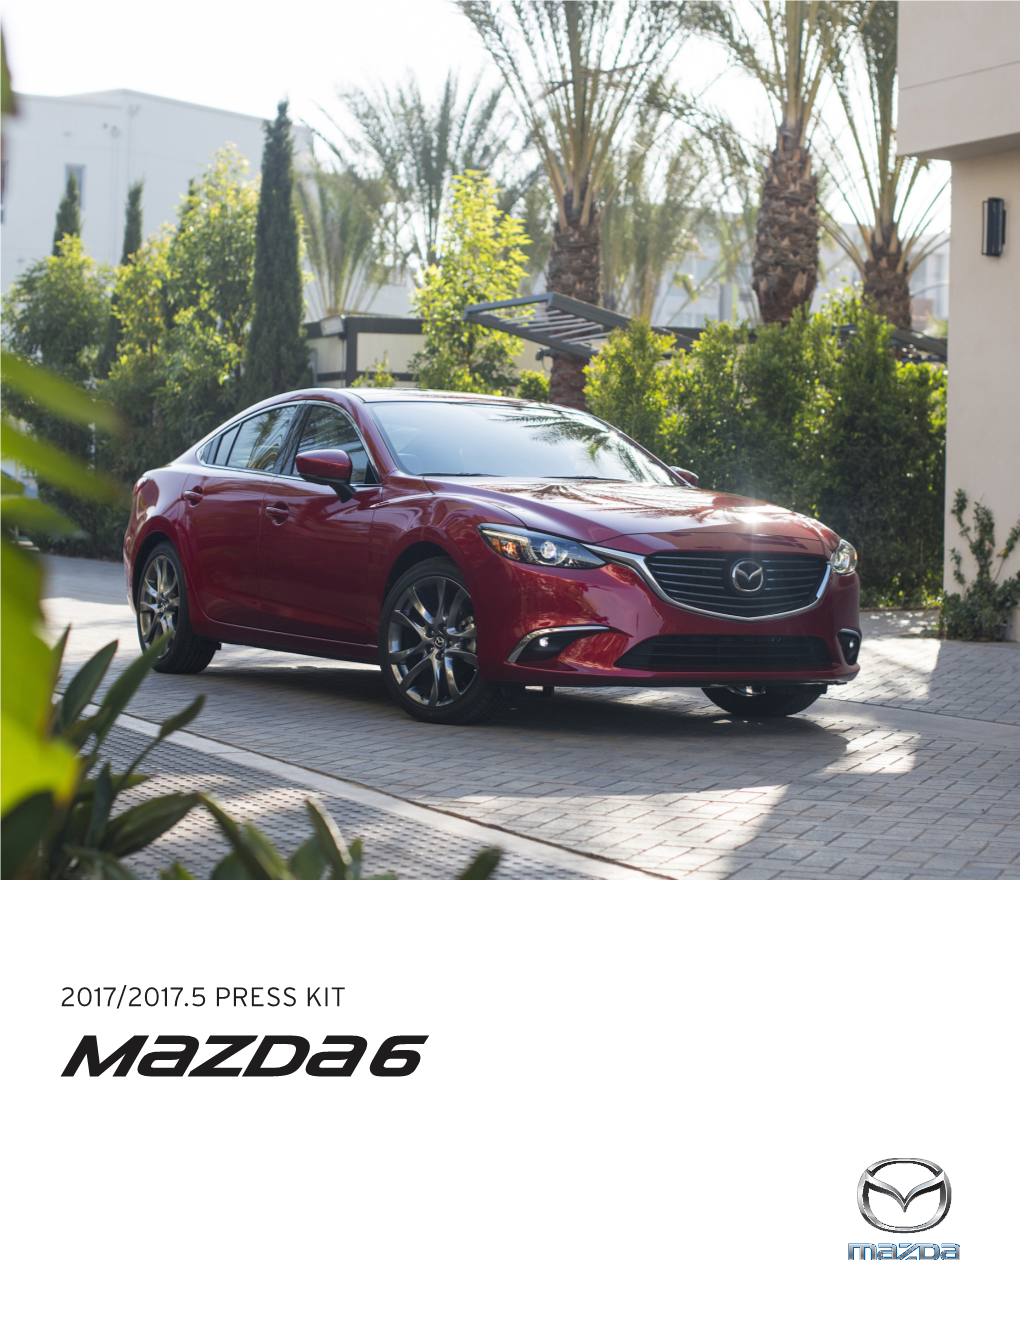 2017 Mazda6 Press